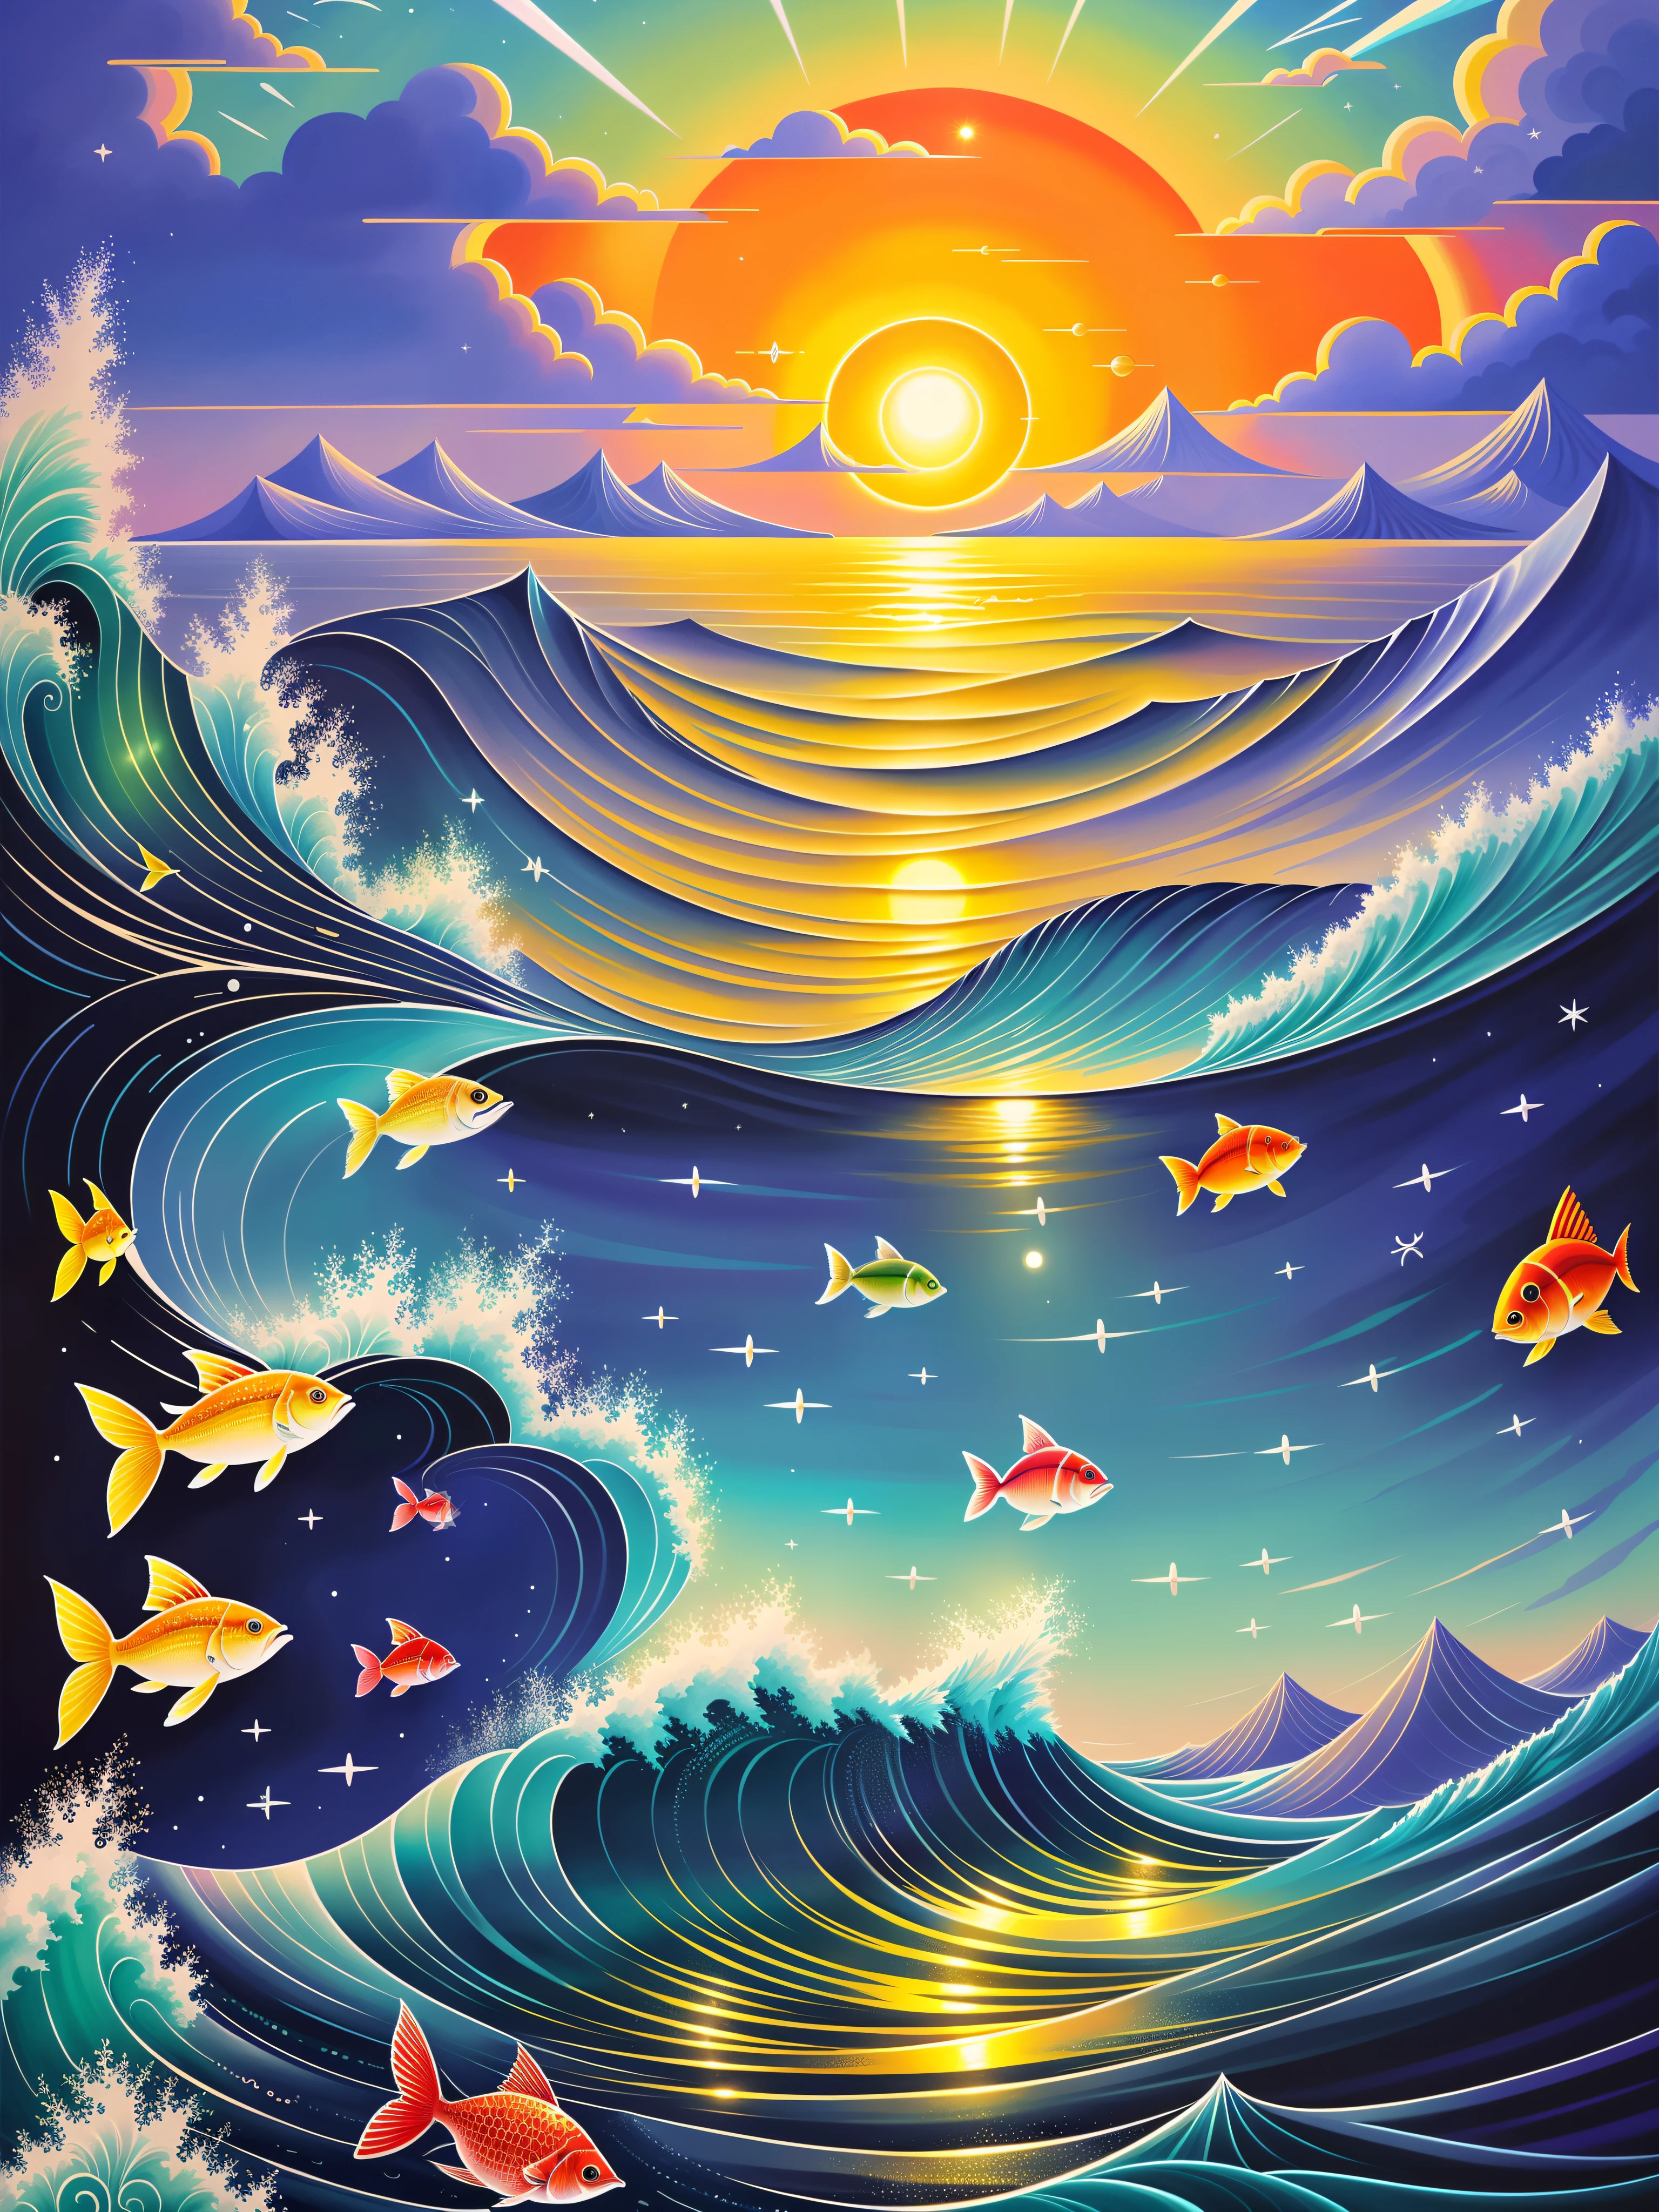 太陽と魚のカラフルなイラストが描かれた海の風景, （（（満月））），たくさんの魚，単なるジョーク, 美しいアートワークのイラスト, 魔法の海, シリル・ロランドに触発されて, 幻想的な海の風景, 美しいアート UHD 8 K, 非常に詳細なデジタル絵画, シリル・ロランド風, 8Kの非常に精細なデジタルアート, 詳細な夢の風景, カラフル 平ら 超現実的 空気のような, 混沌とした海の設定